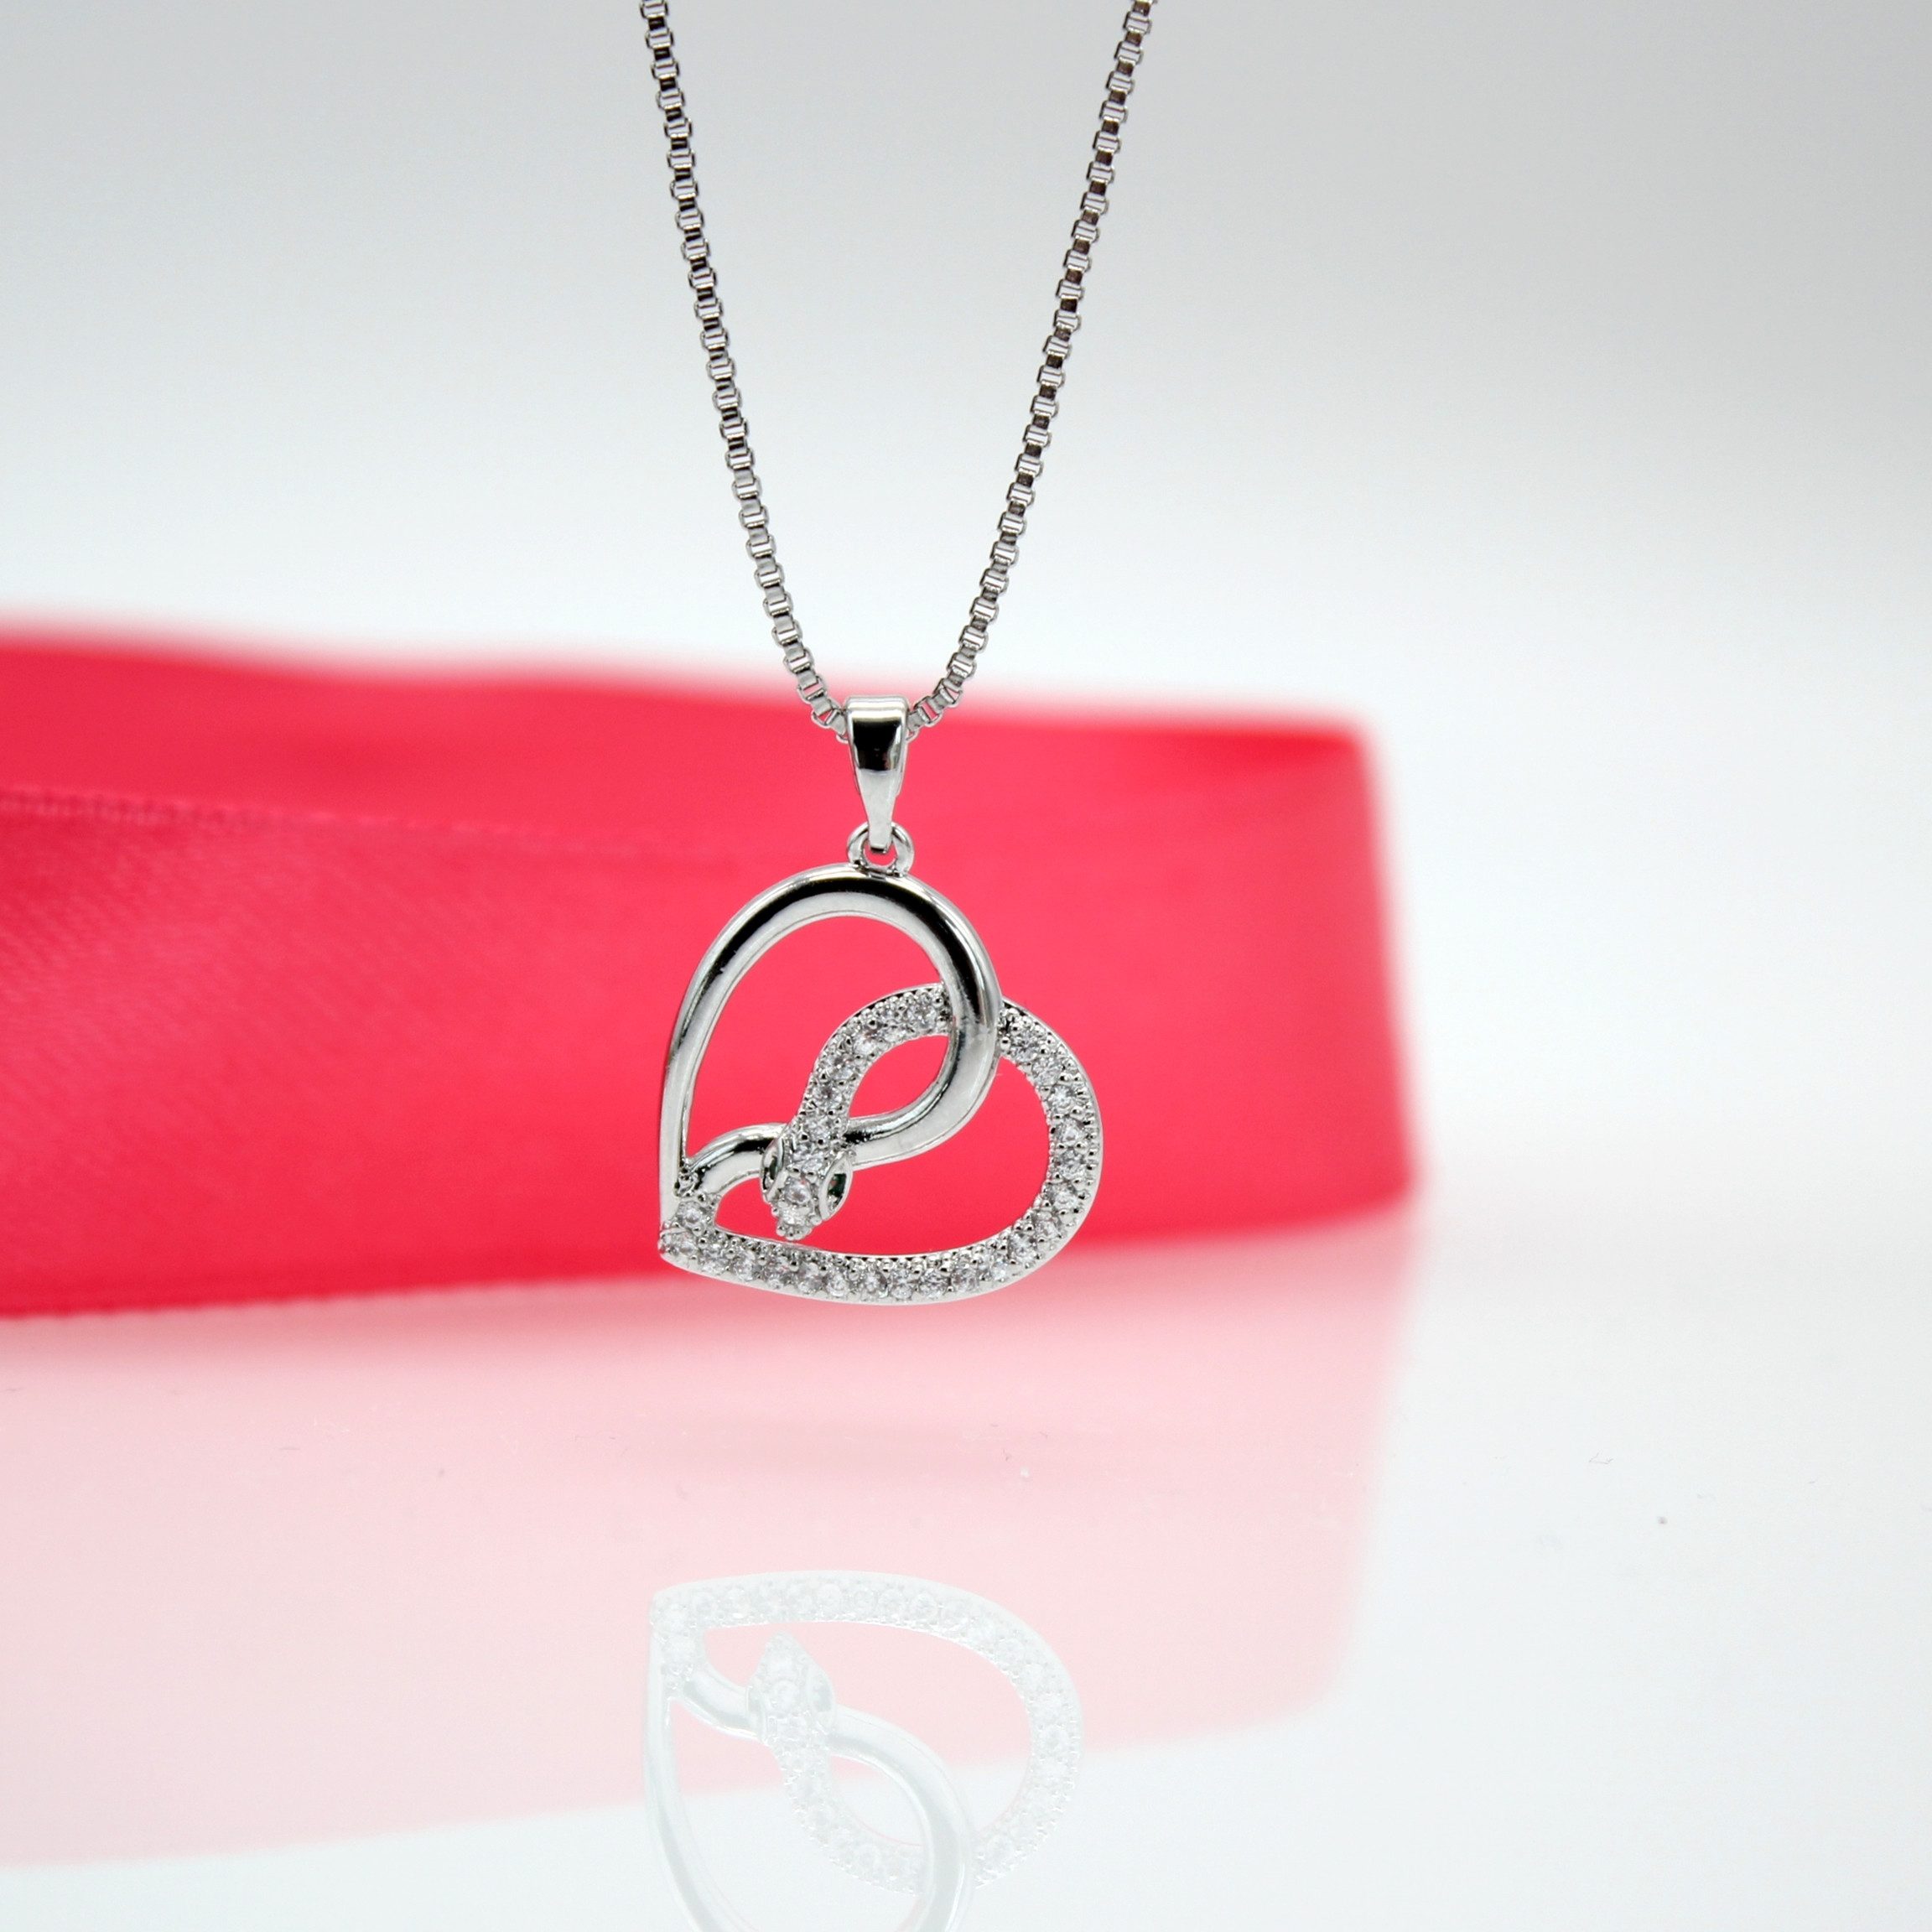 ELLAWIL Herzkette Halskette mit Schlangenherz Anhänger Zirkonia Venezianerkette (Kettenlänge 40 cm, verlängerbar um 6 cm, Edelstahl), inklusive Geschenkschachtel